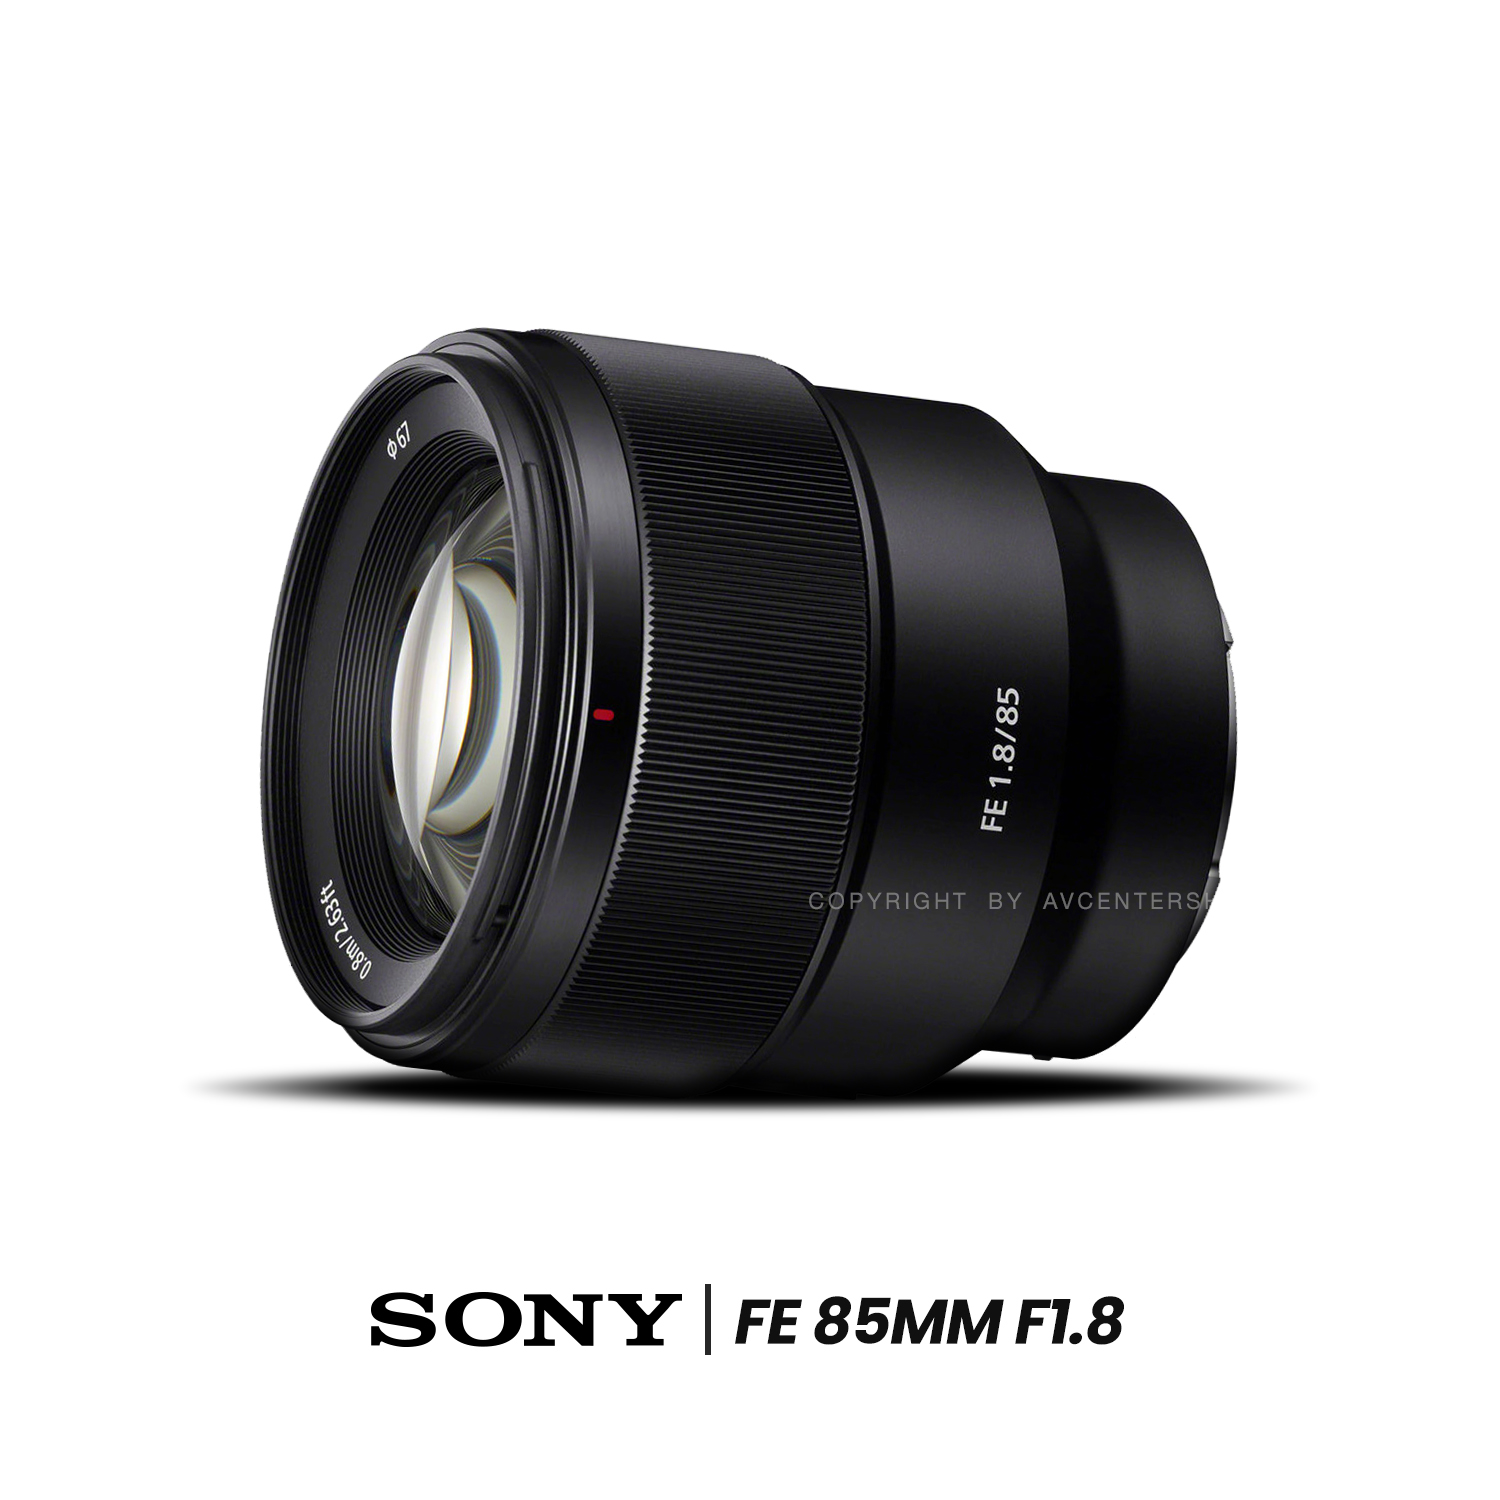 Sony Lens FE 85 mm. F1.8